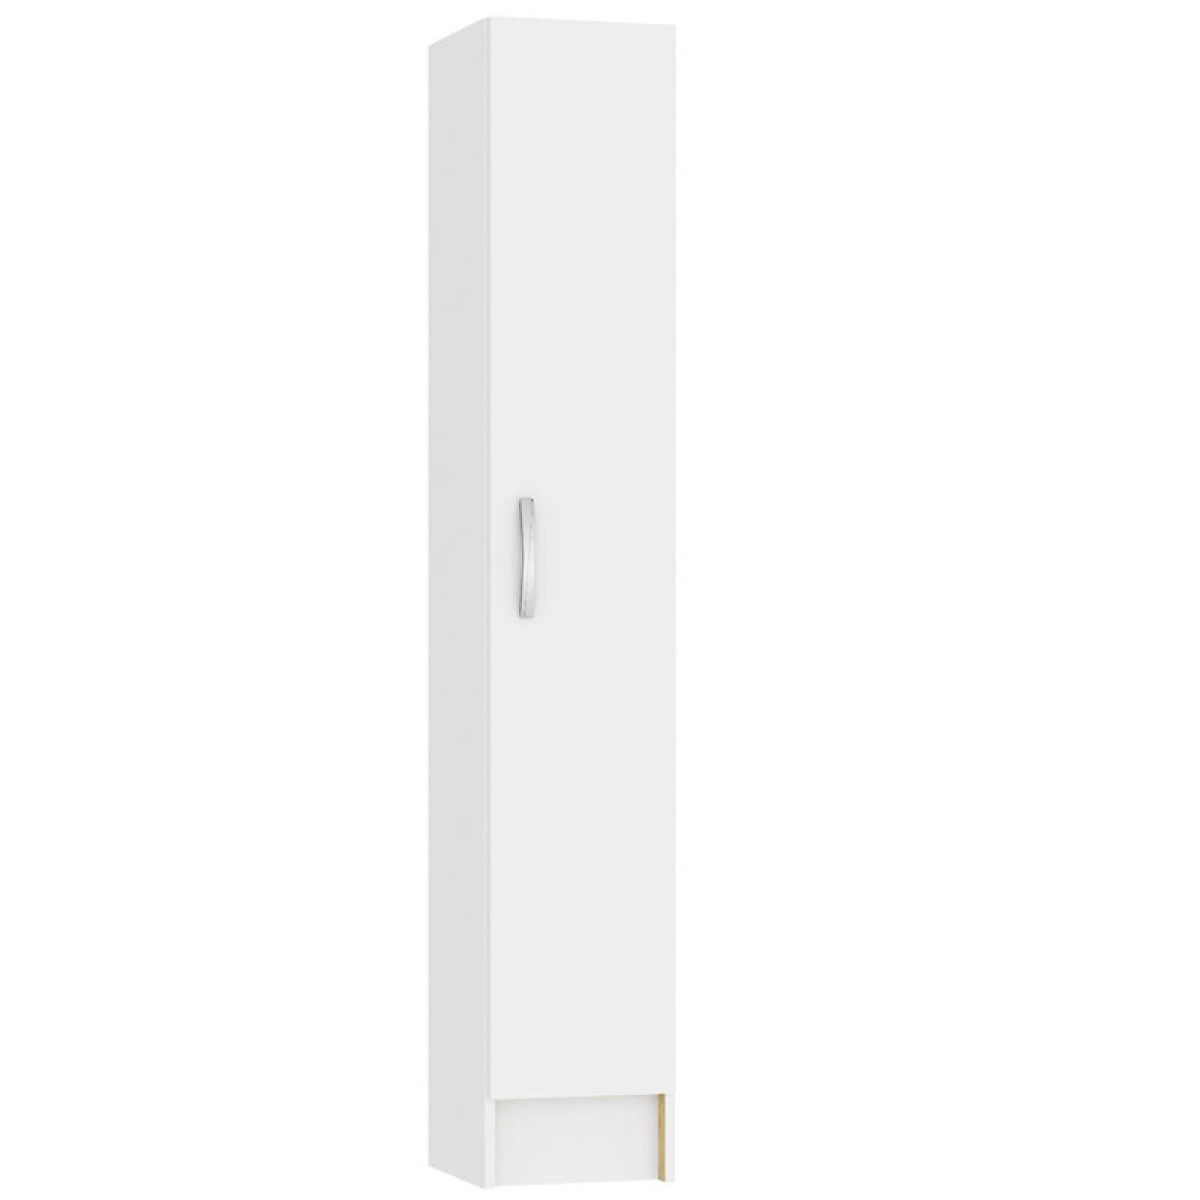 Multiuso panelero 1 puerta 4 estantes interior natural 30x32x168 - Blanco 